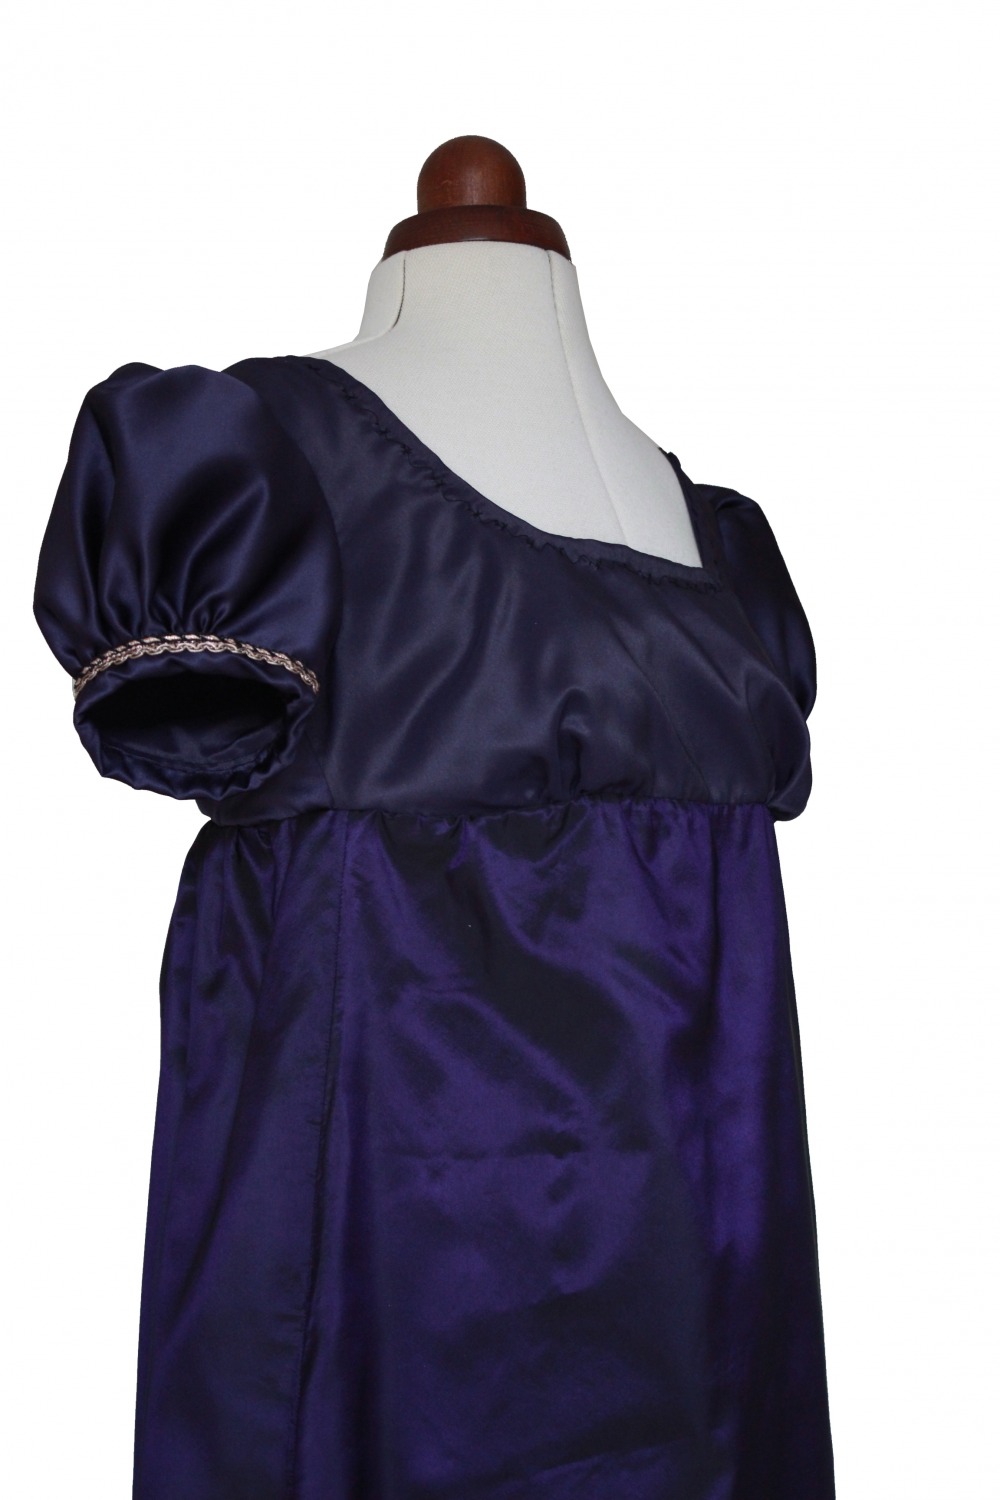 Ladies/ Older Girl's Petite Regency Jane Austen Evening Gown Size 8 - 10 Image